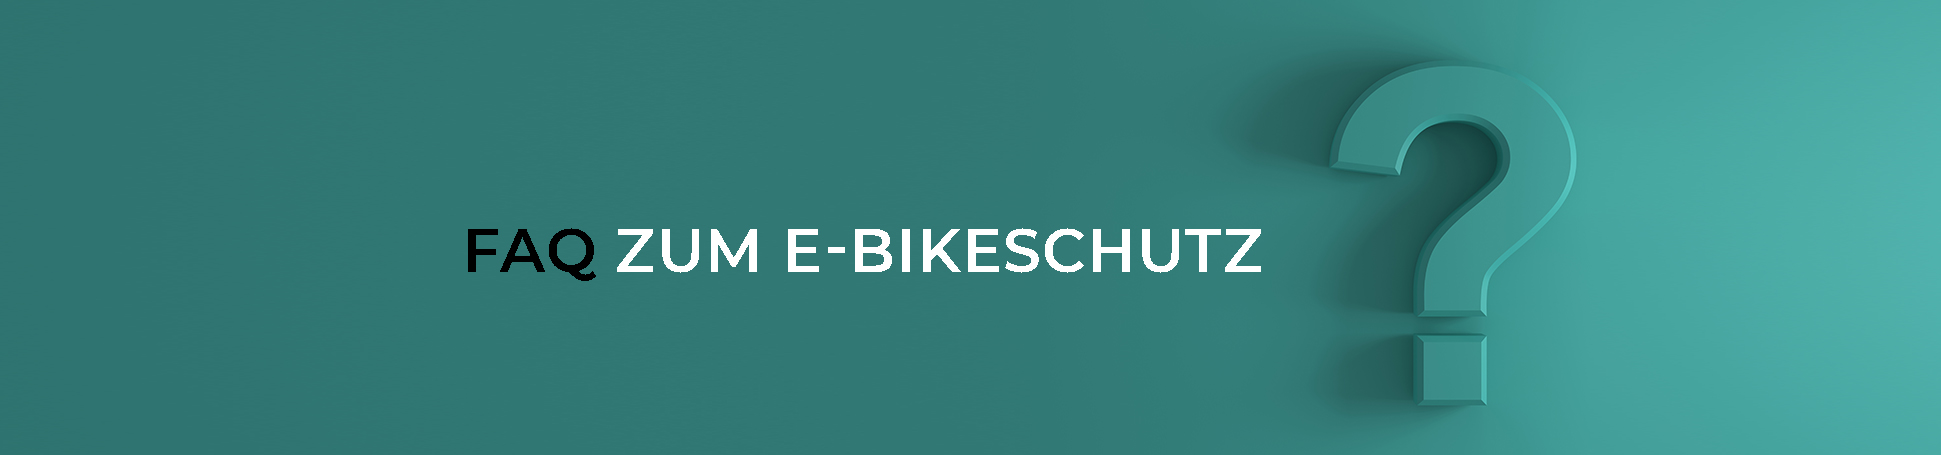 FAQ zum E-Bikeschutz